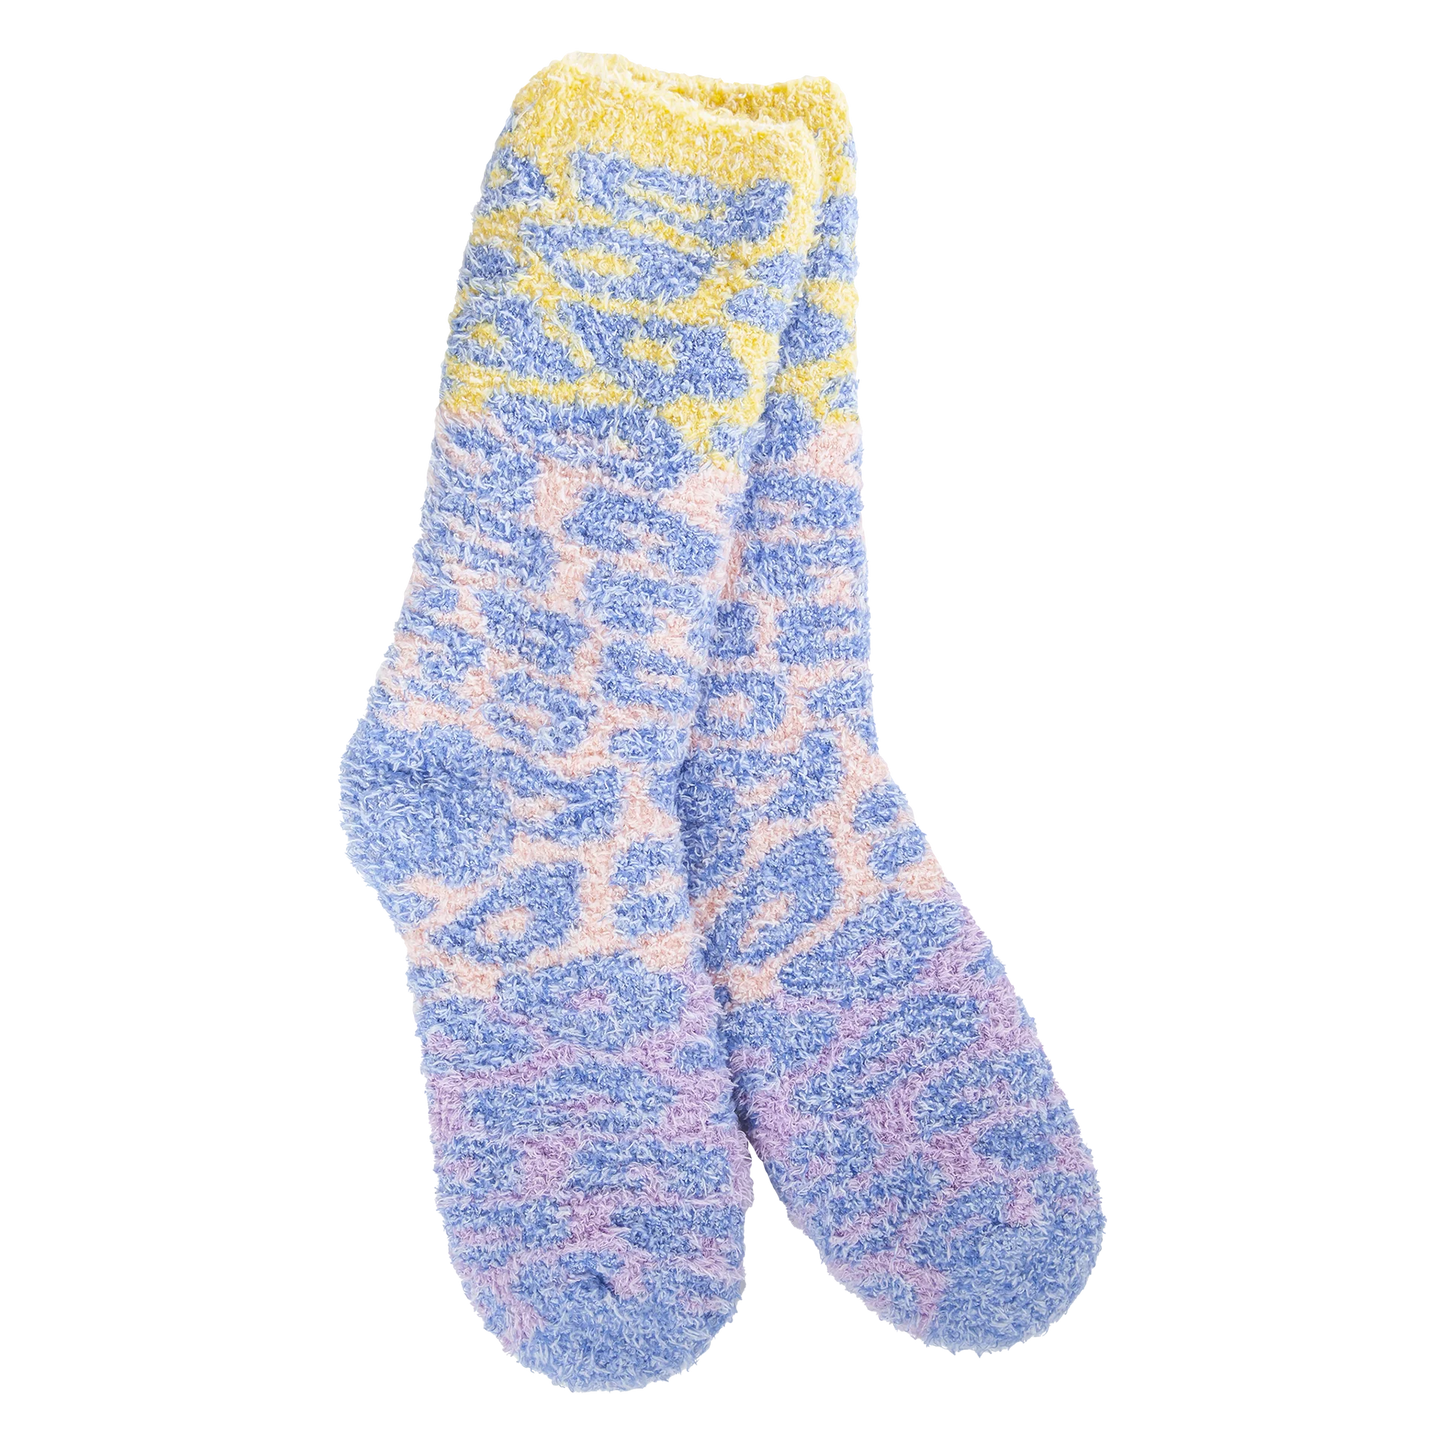 75094 Blue Multi Leopard Socks